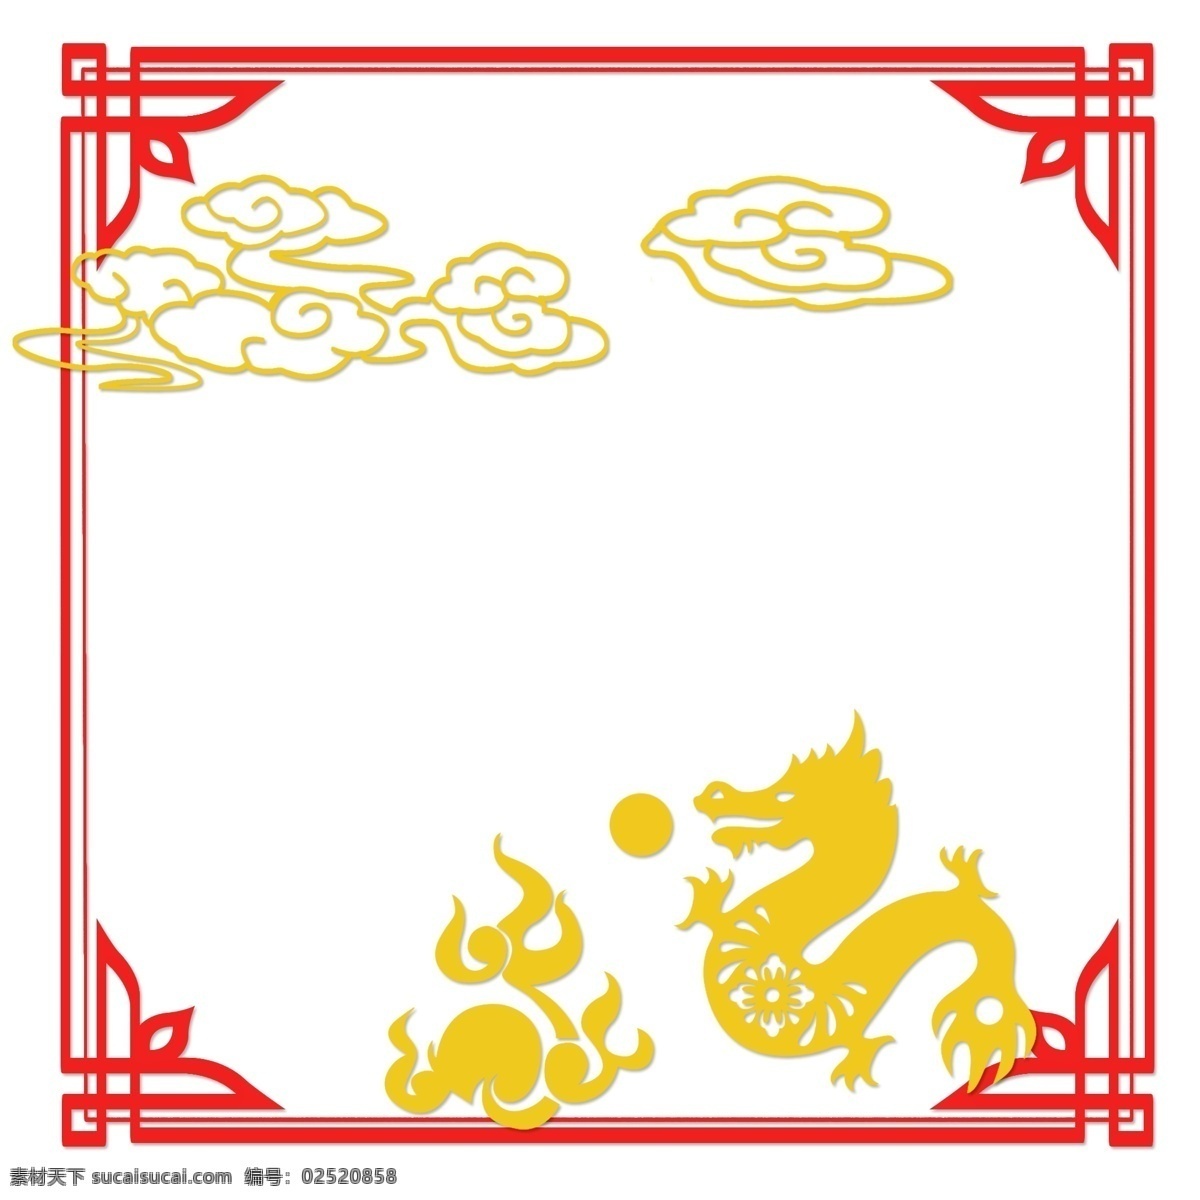 中国 风 古典 风格 扁平 边框 矢量图 十二生肖 中国风 古典风格 扁平风 简约 古风手绘 矢量套图 红色 黄色 古风 龙